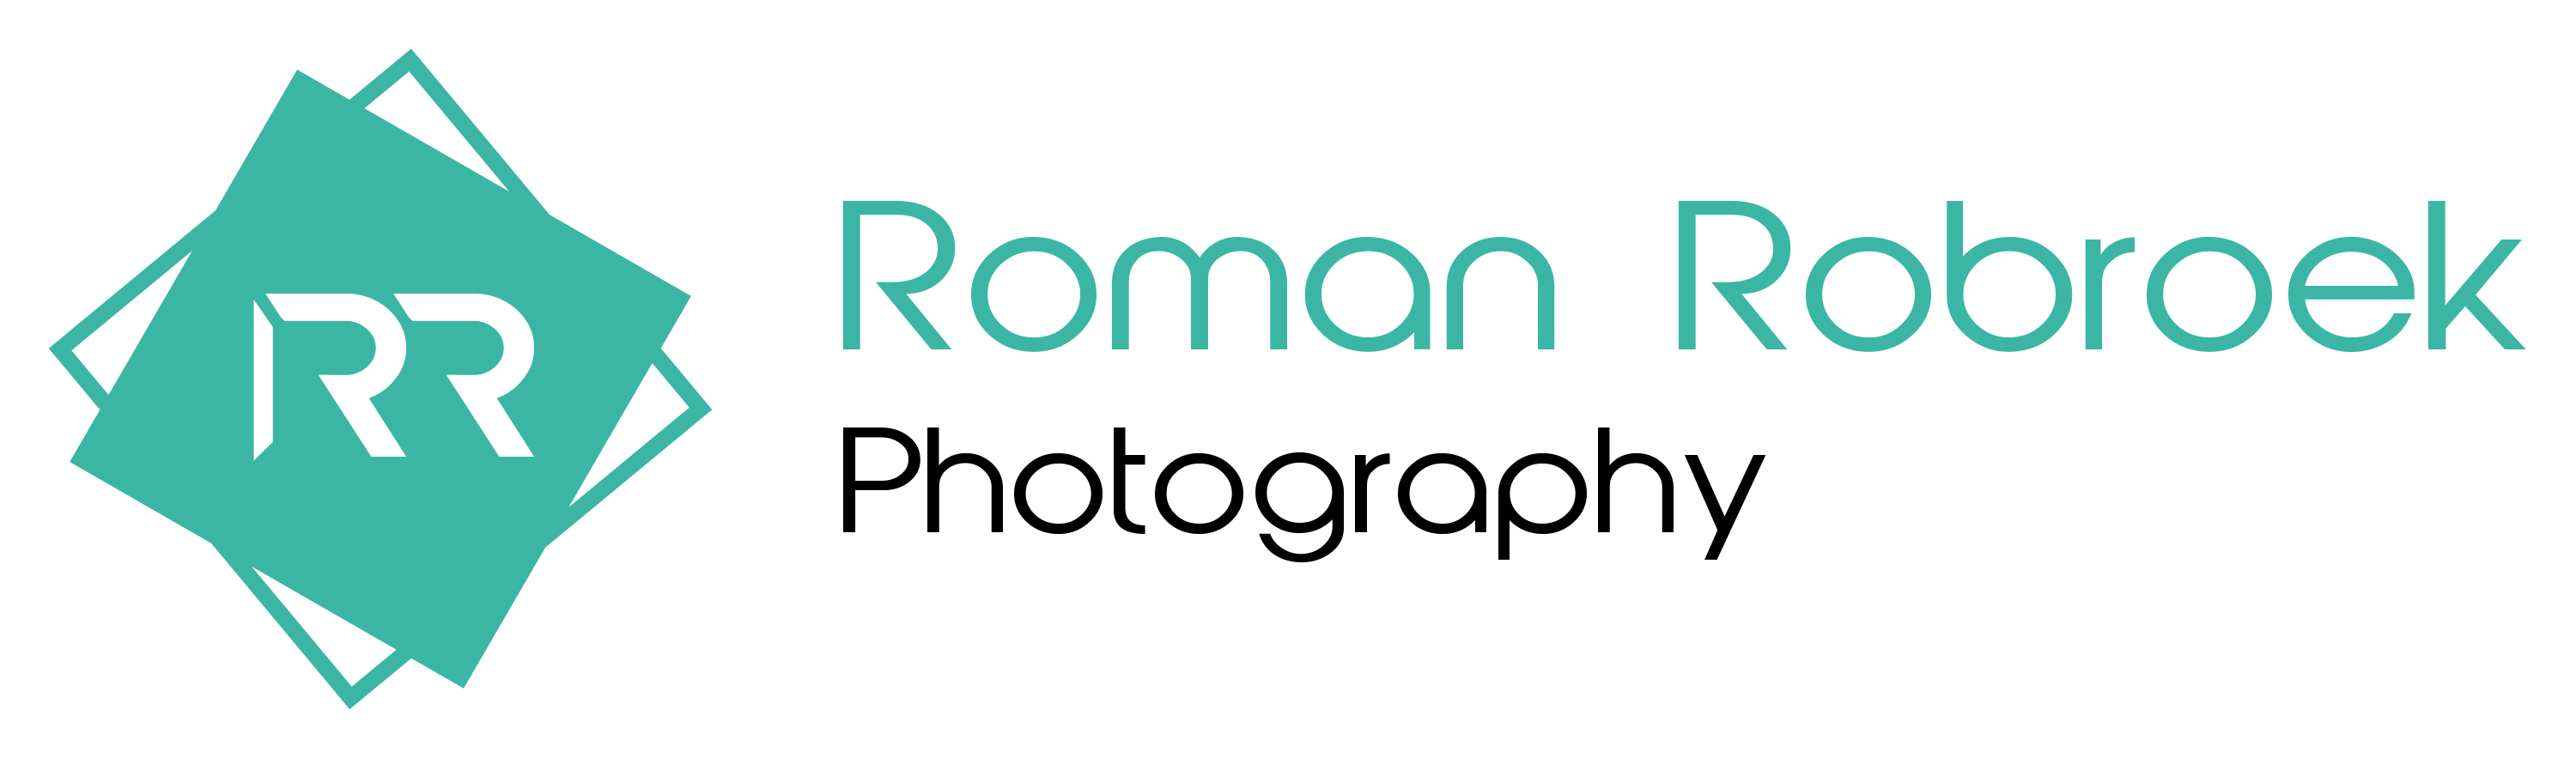 Roman Robroek - Artist Website